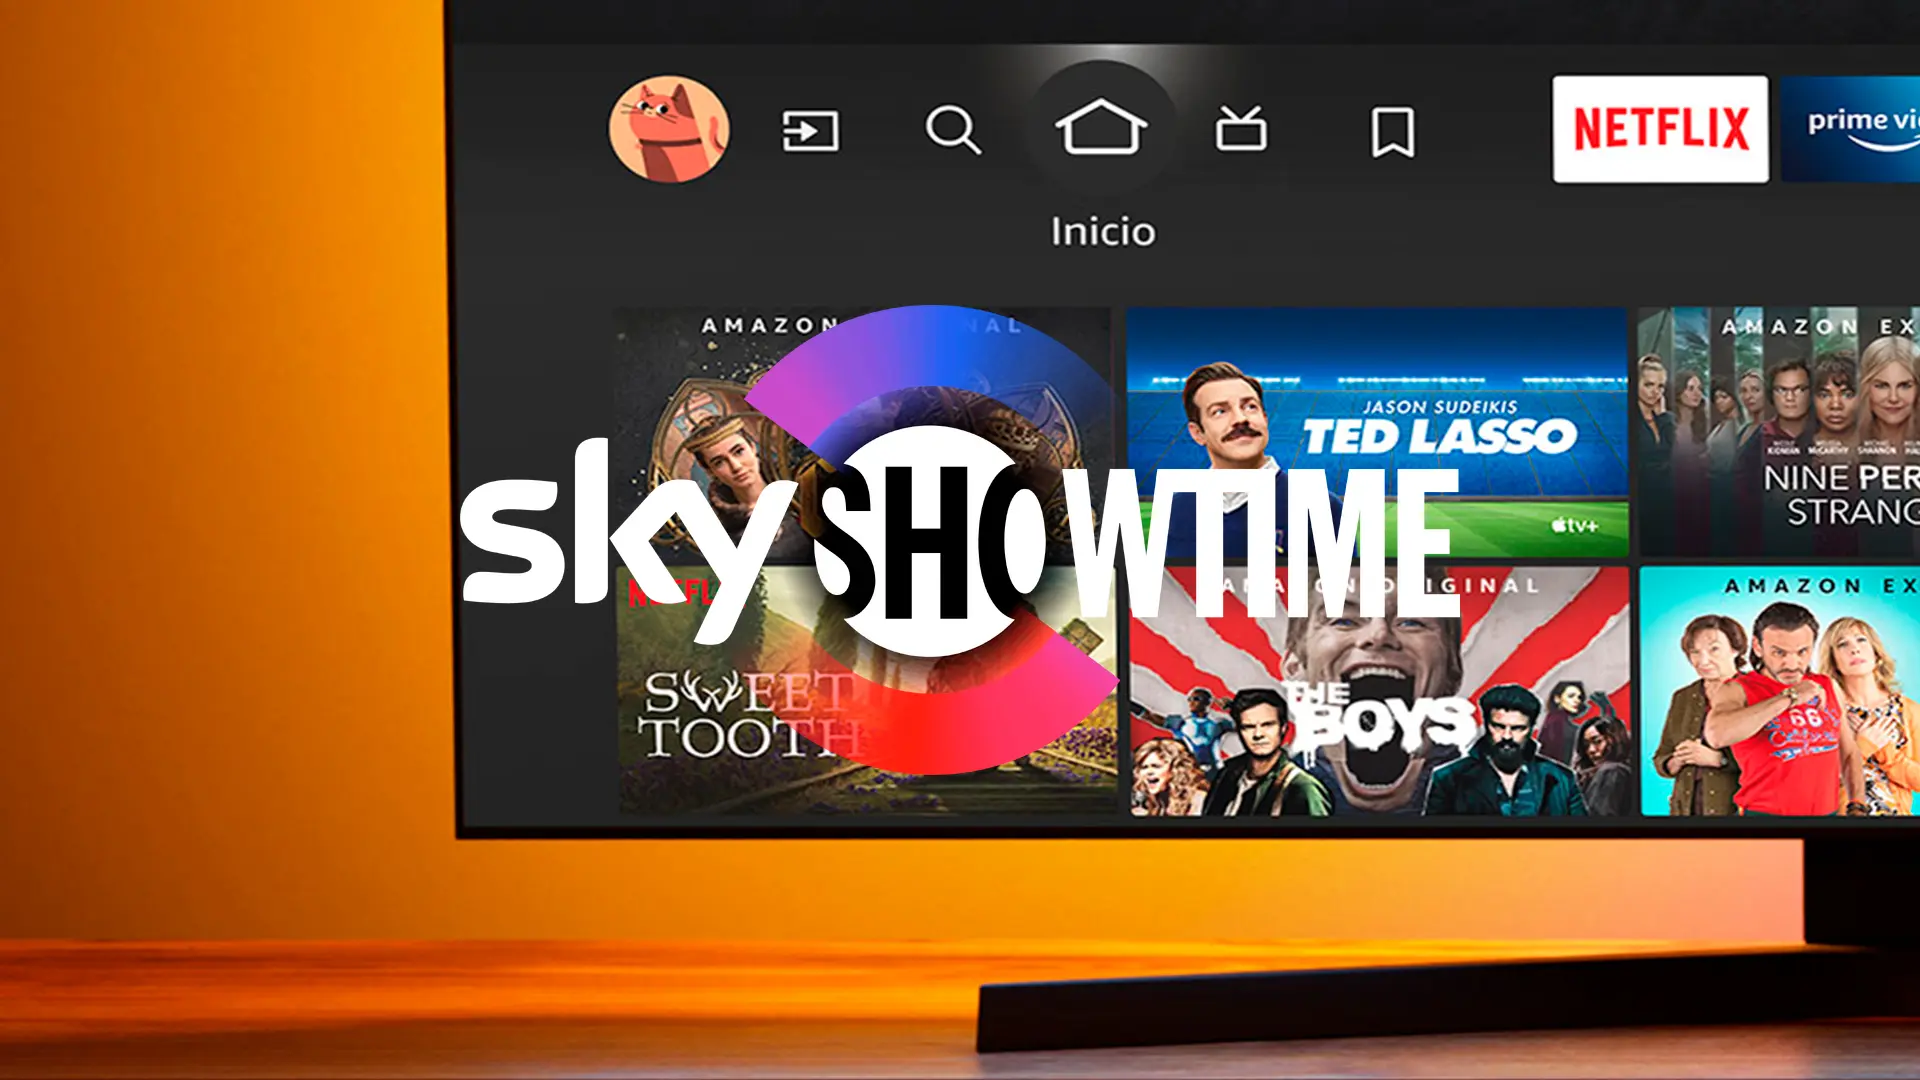 SkyShowtime no va bien el Xiaomi TV F2 pero lo he arreglado